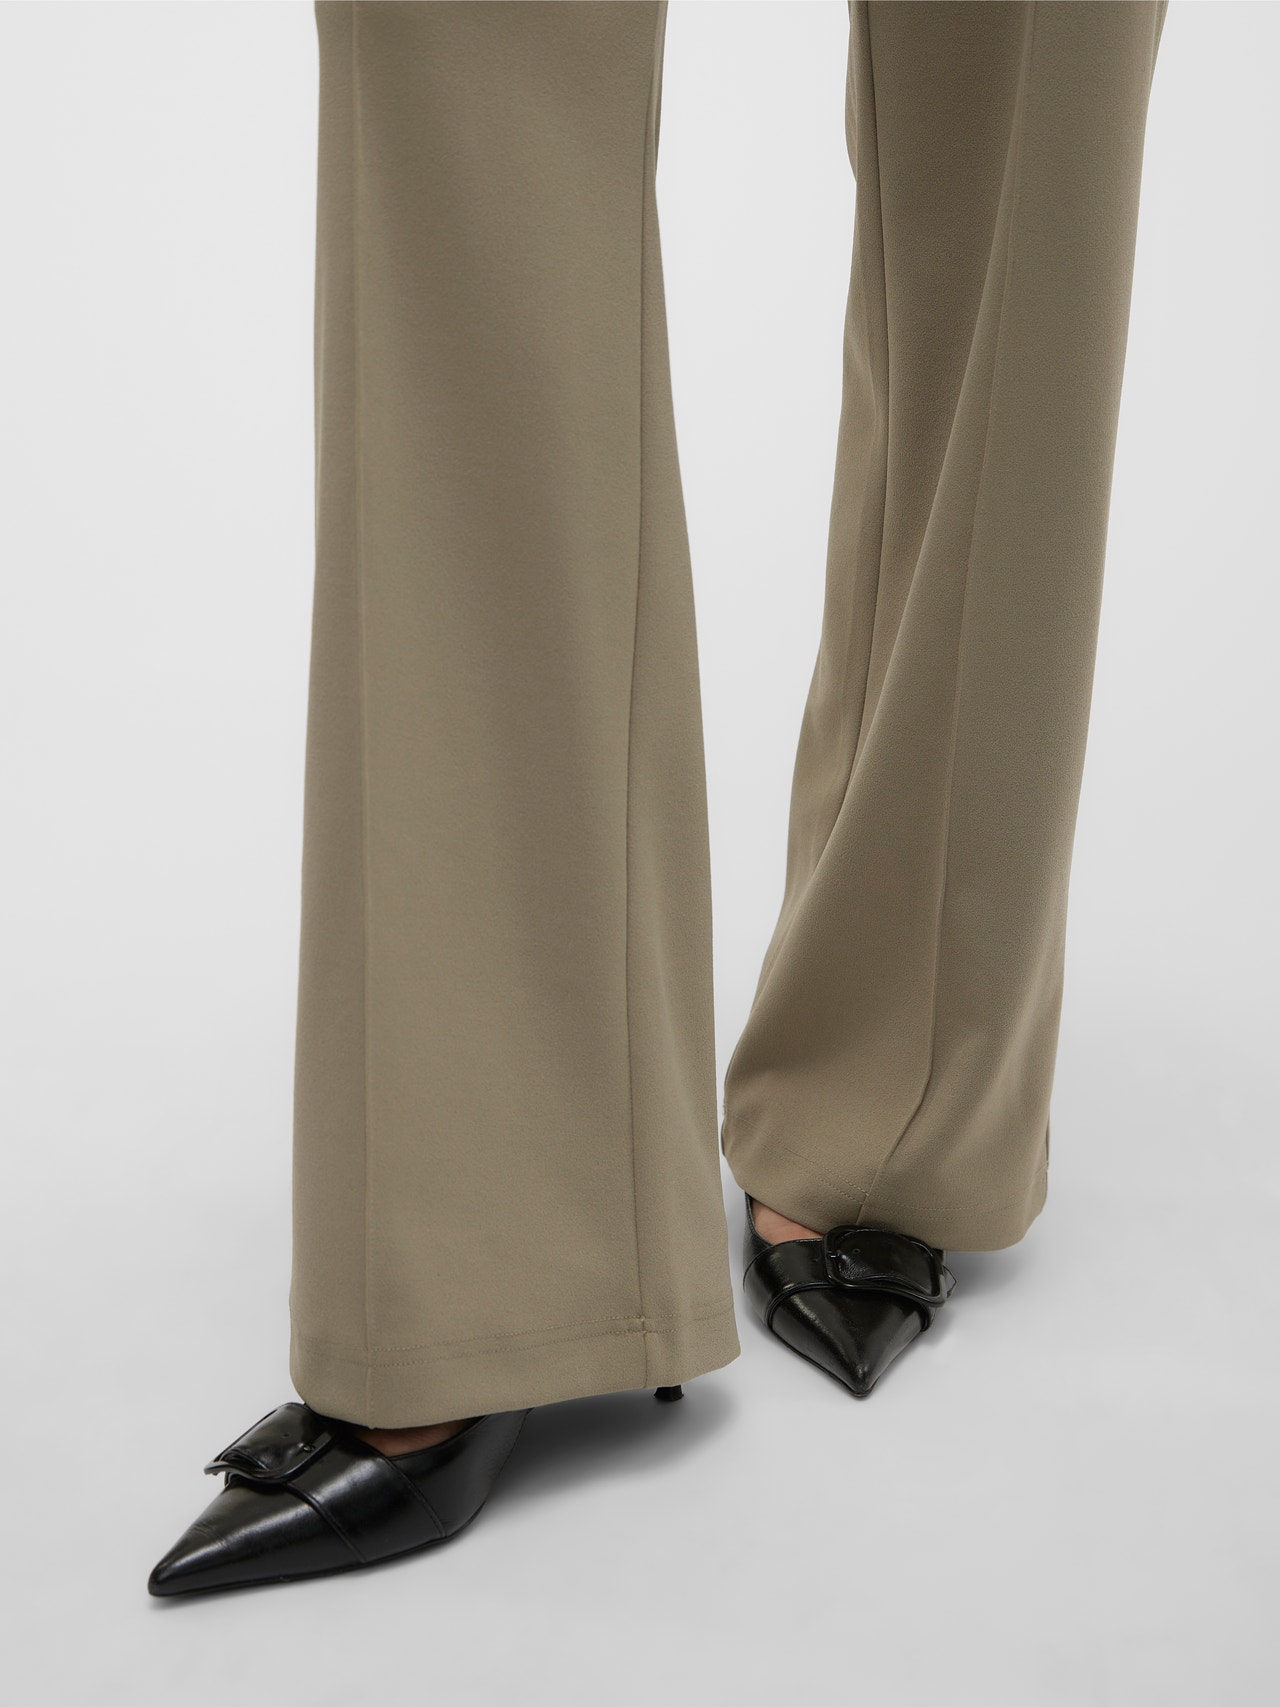 Vero Moda VMBECKY Trousers -Laurel Oak - 10257168